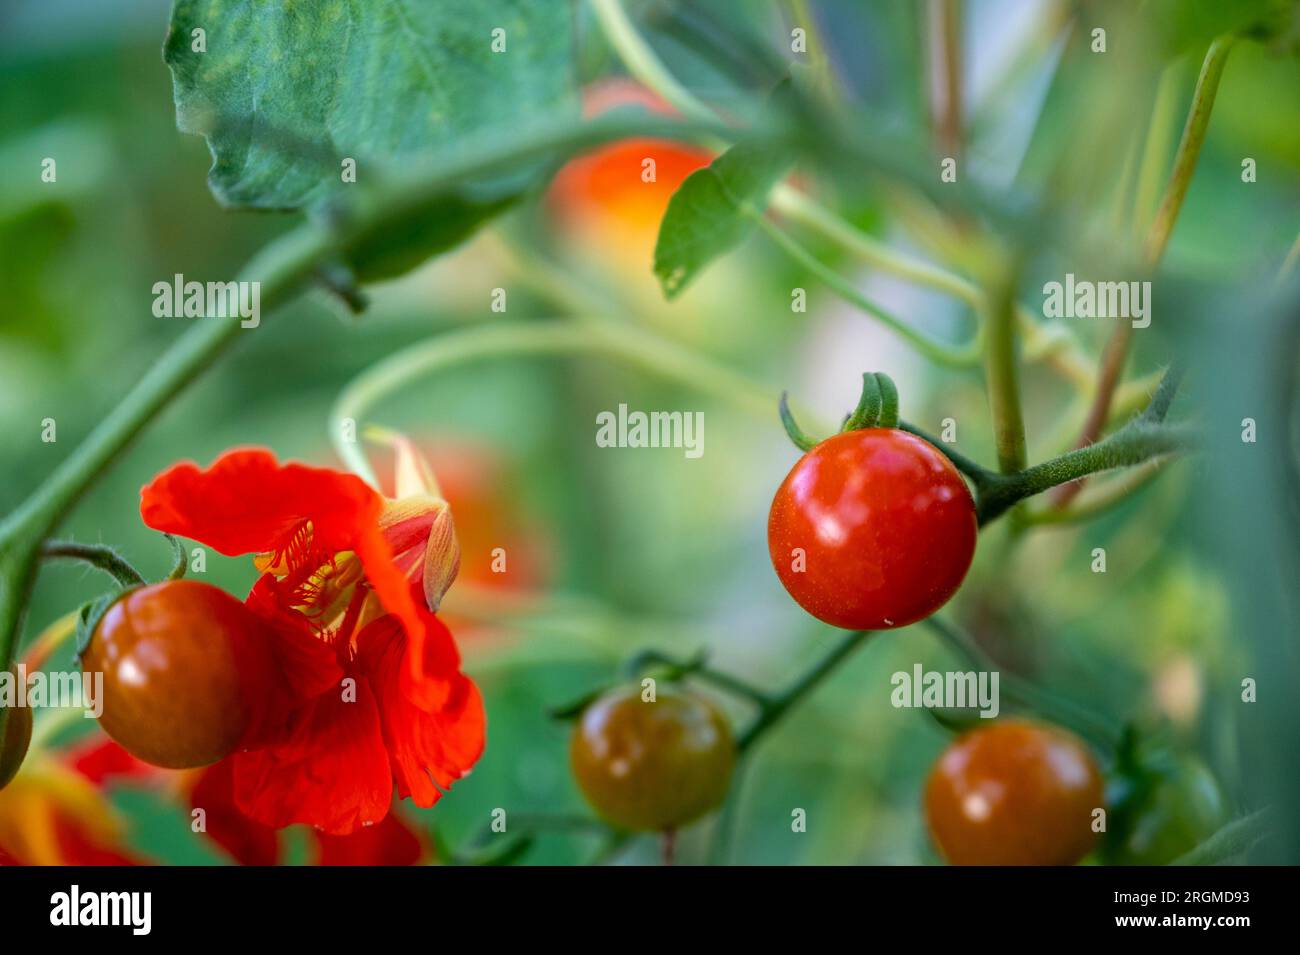 Plantation compagnon de nasturtiums pour protéger les tomates cerises des ravageurs. Banque D'Images